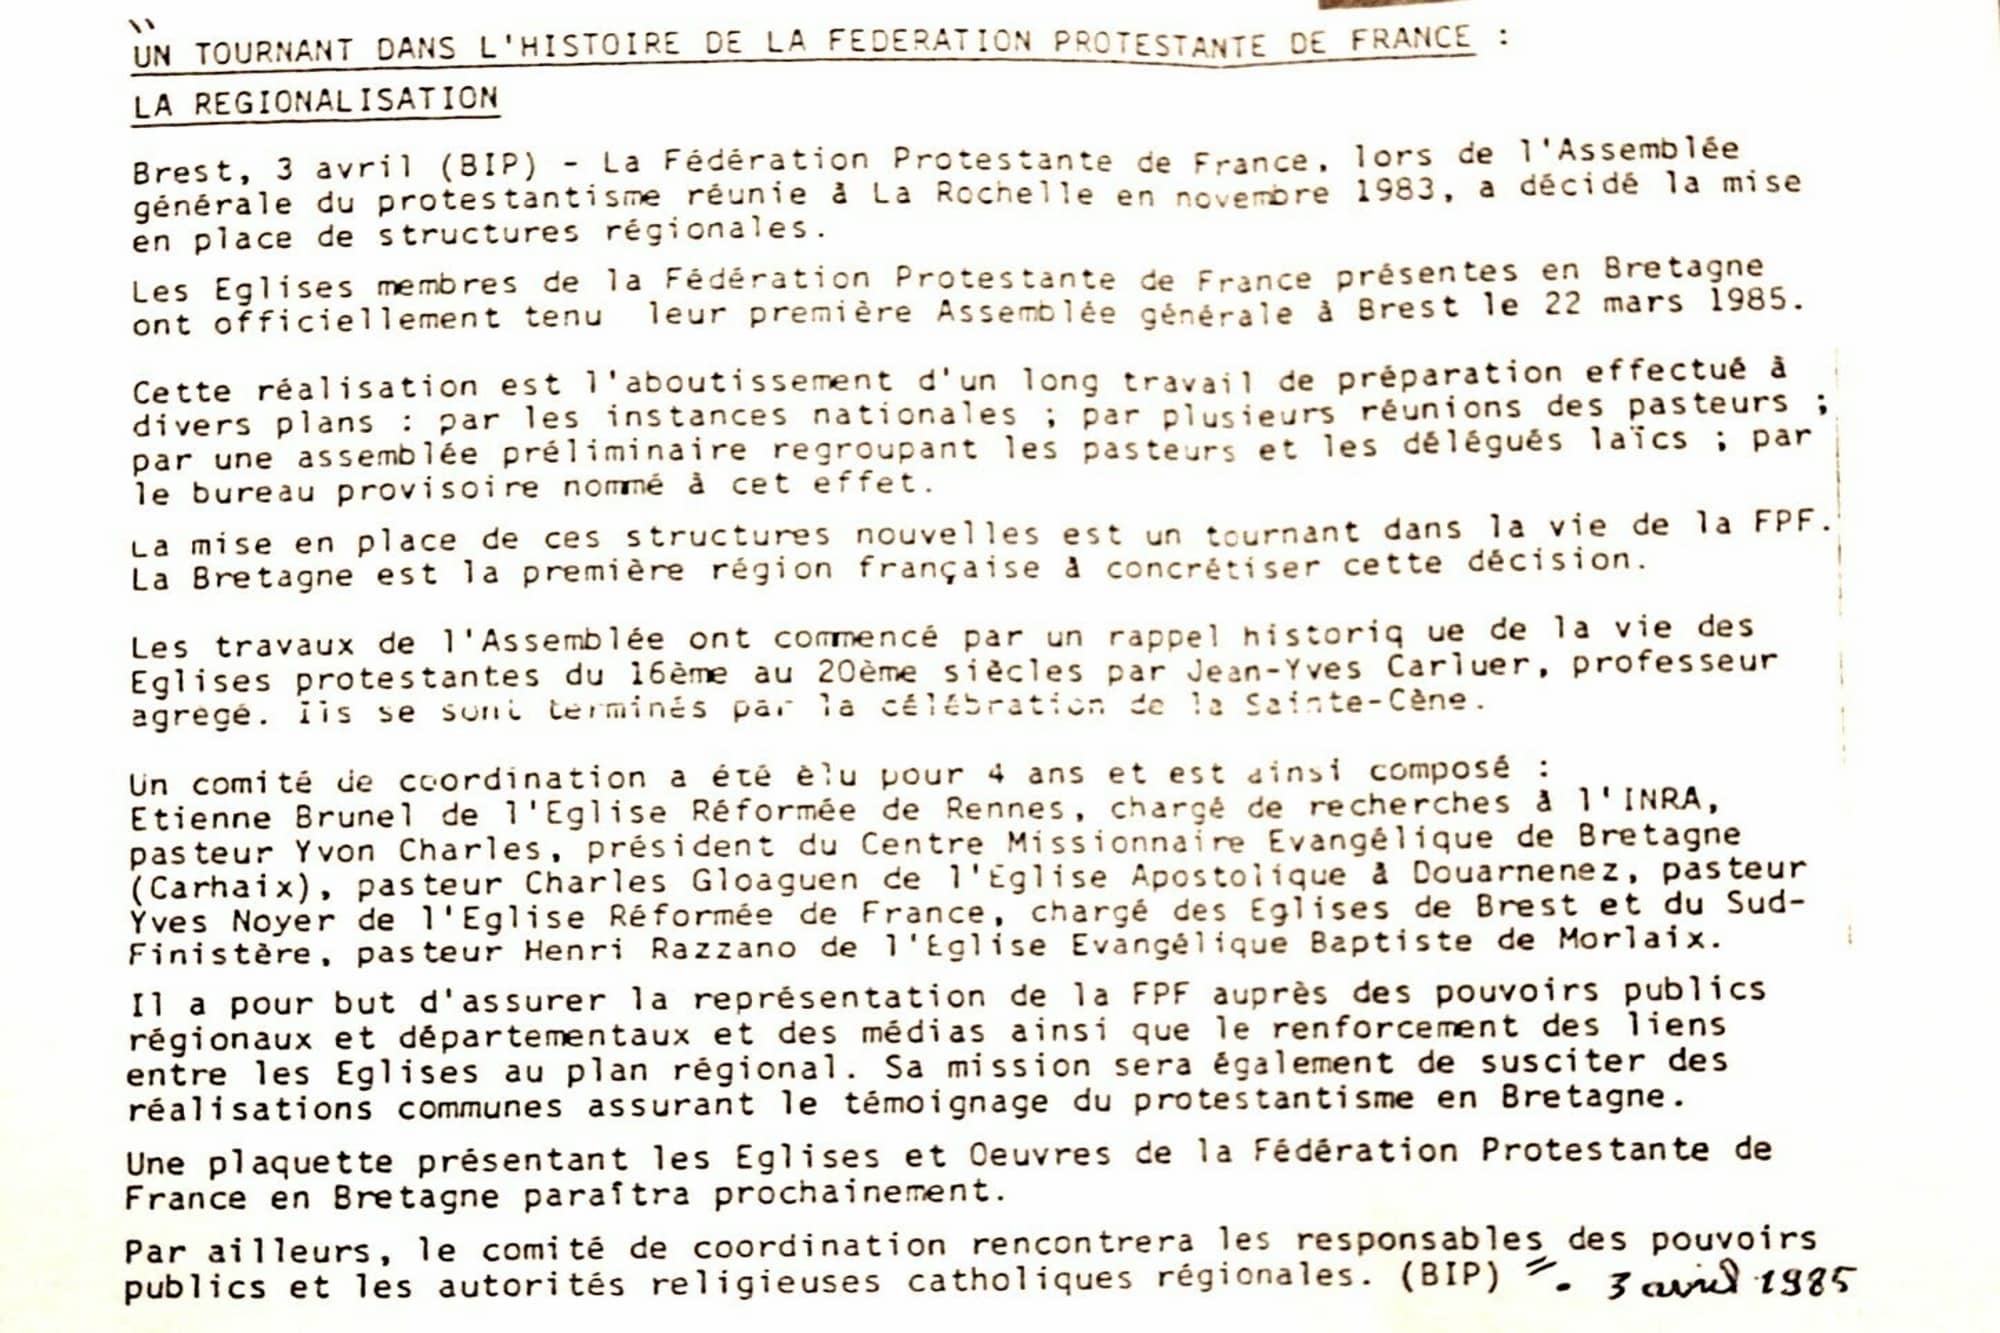 Pasteur Y. Charles et la Régionalisation de la FPF